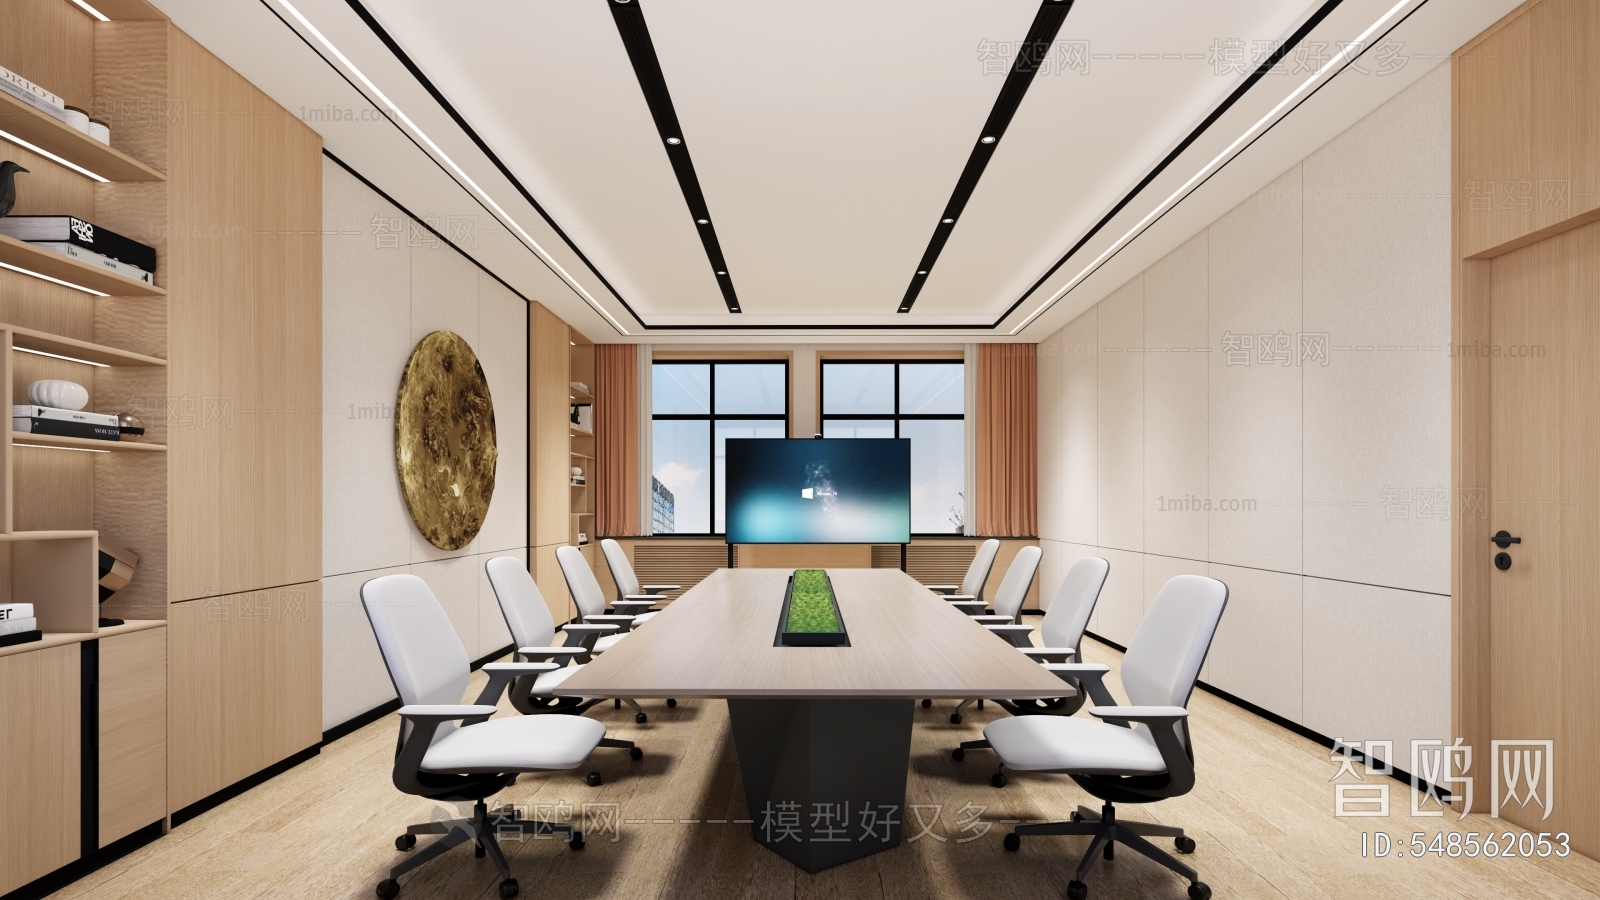 Modern Meeting Room